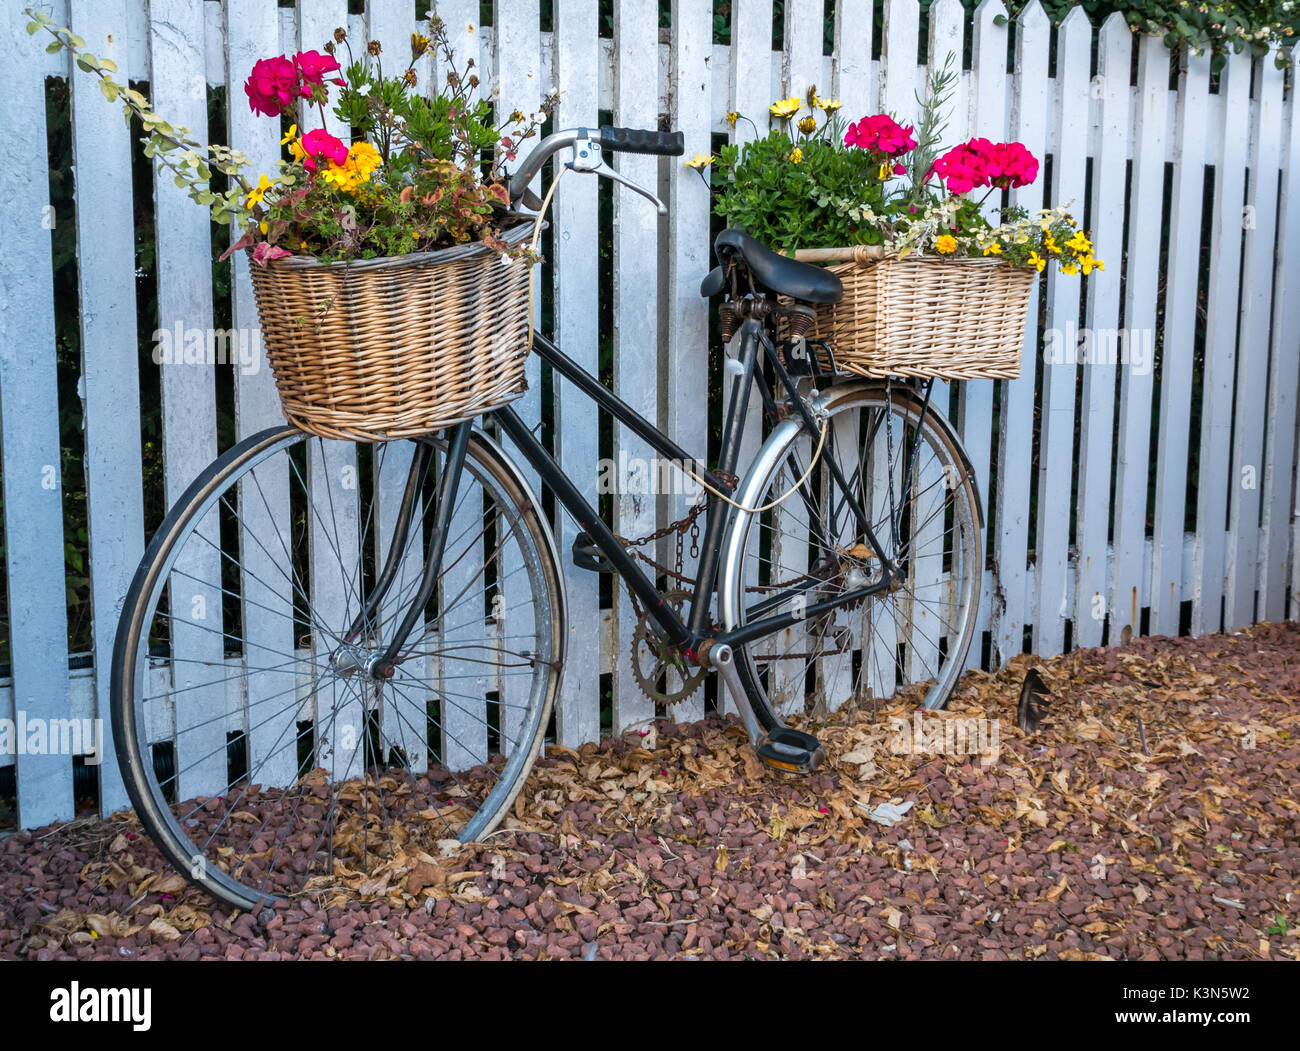 Eine ungewöhnliche Pflanzung von hübschen Blumen in Fahrradkörben am Bahnhof von North Berwick gegen einen weißen Zaun, East Lothian, Schottland, Großbritannien Stockfoto